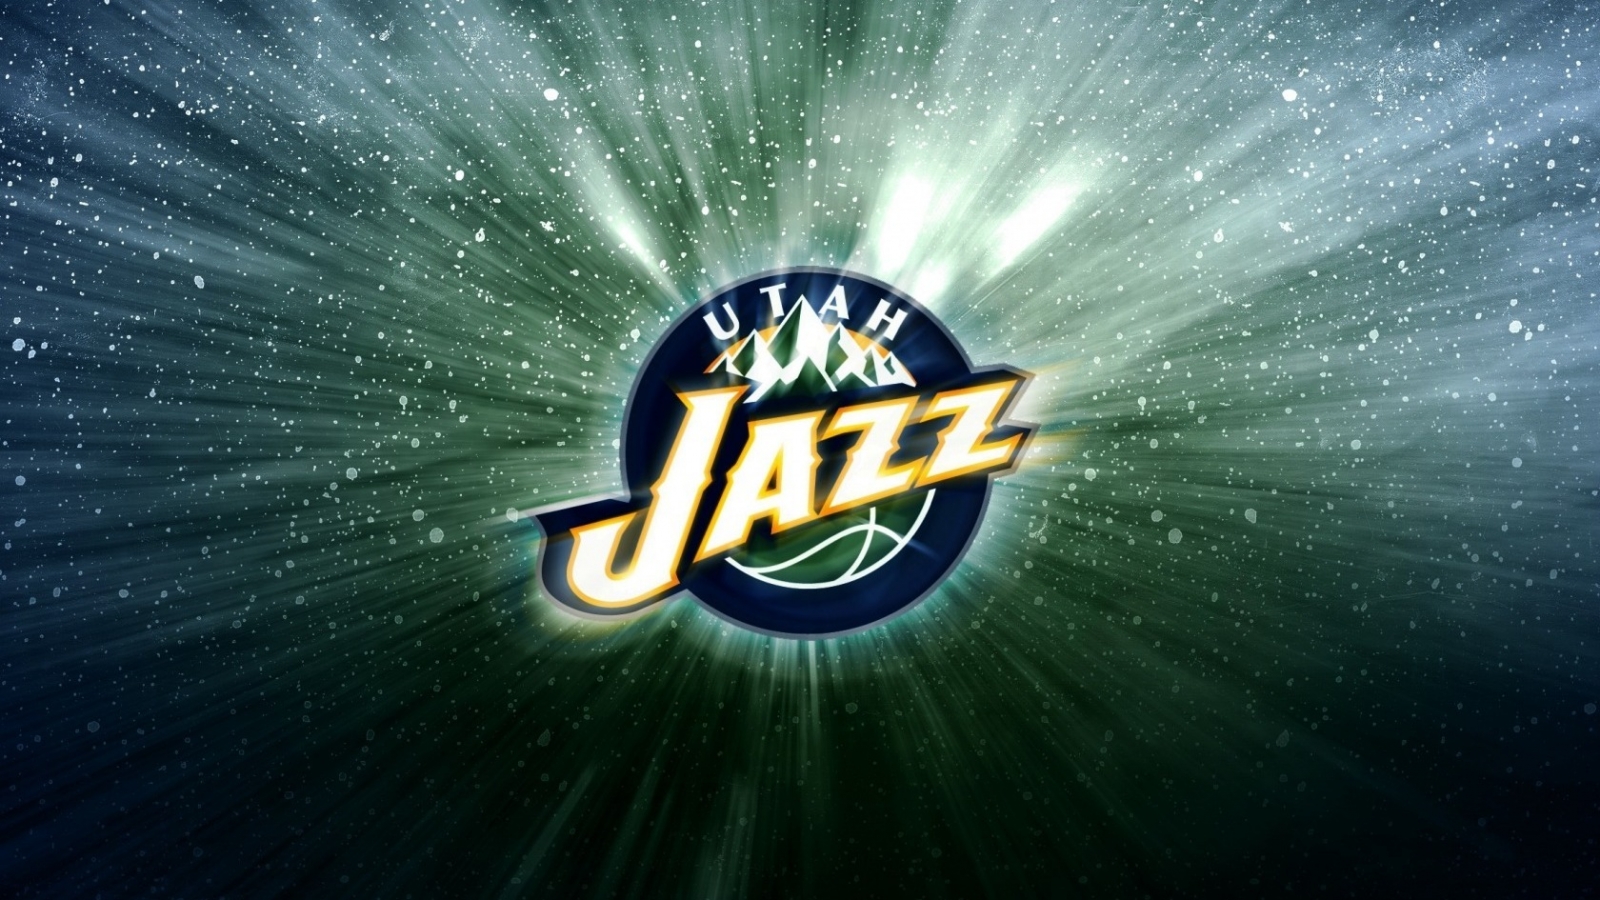 Utah Jazz  for 1600 x 900 HDTV resolution